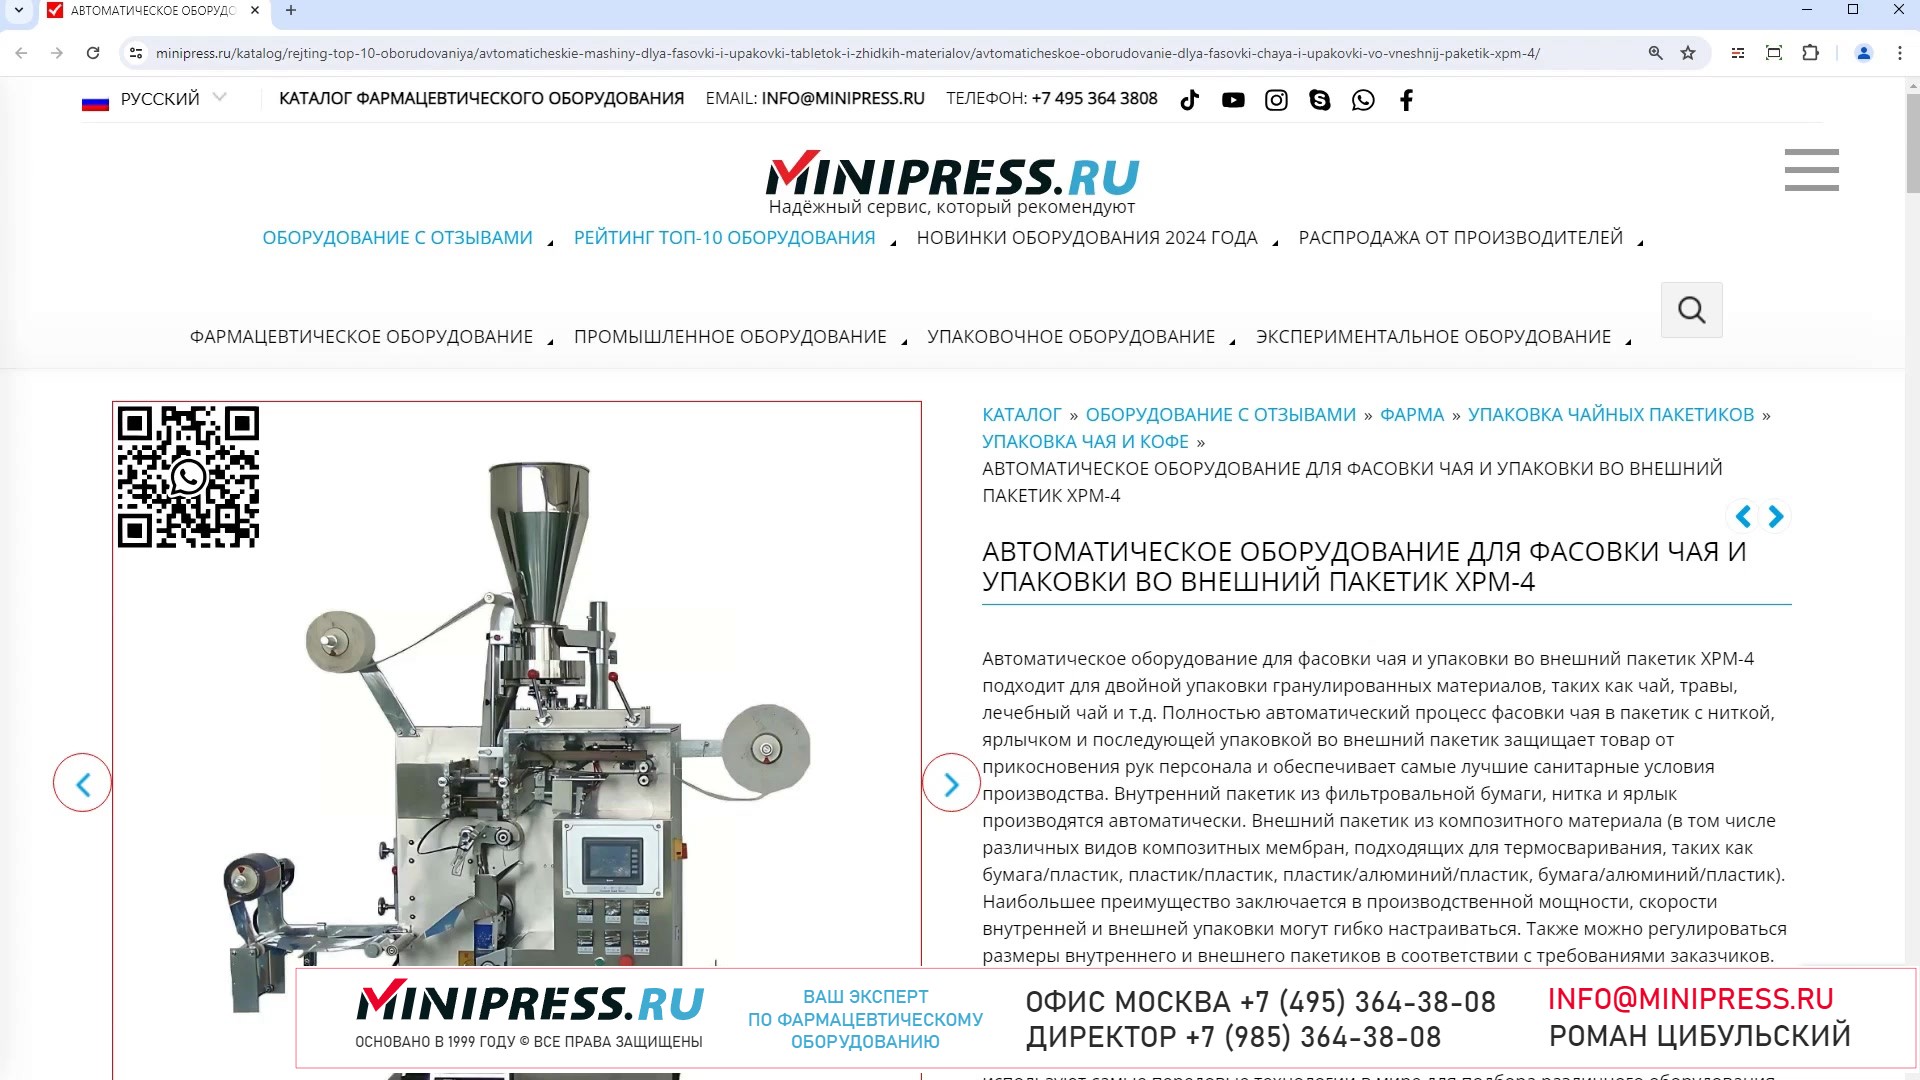 Minipress.ru Автоматическое оборудование для фасовки чая и упаковки во внешний пакетик XPM-4